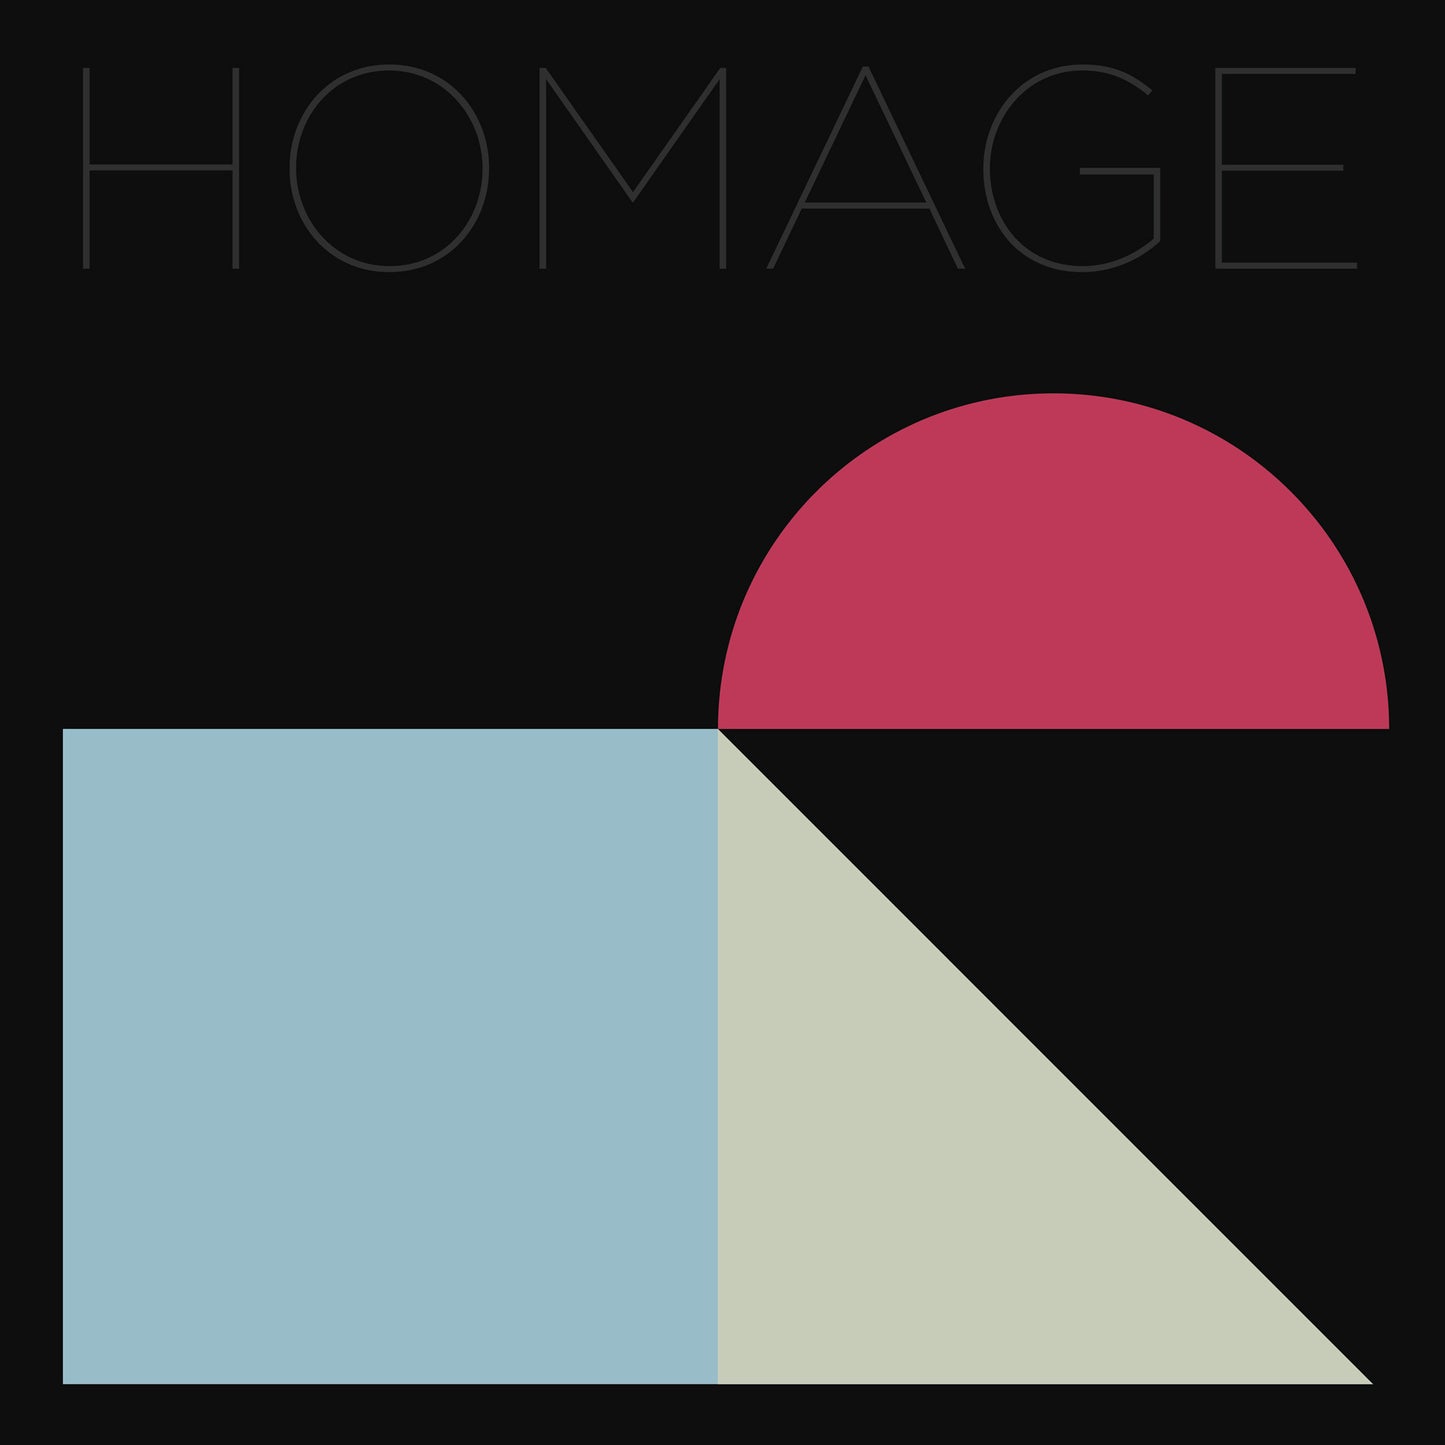 Eleh - Homage Series  - Square/Sine/Pointed Waveforms - 3CD